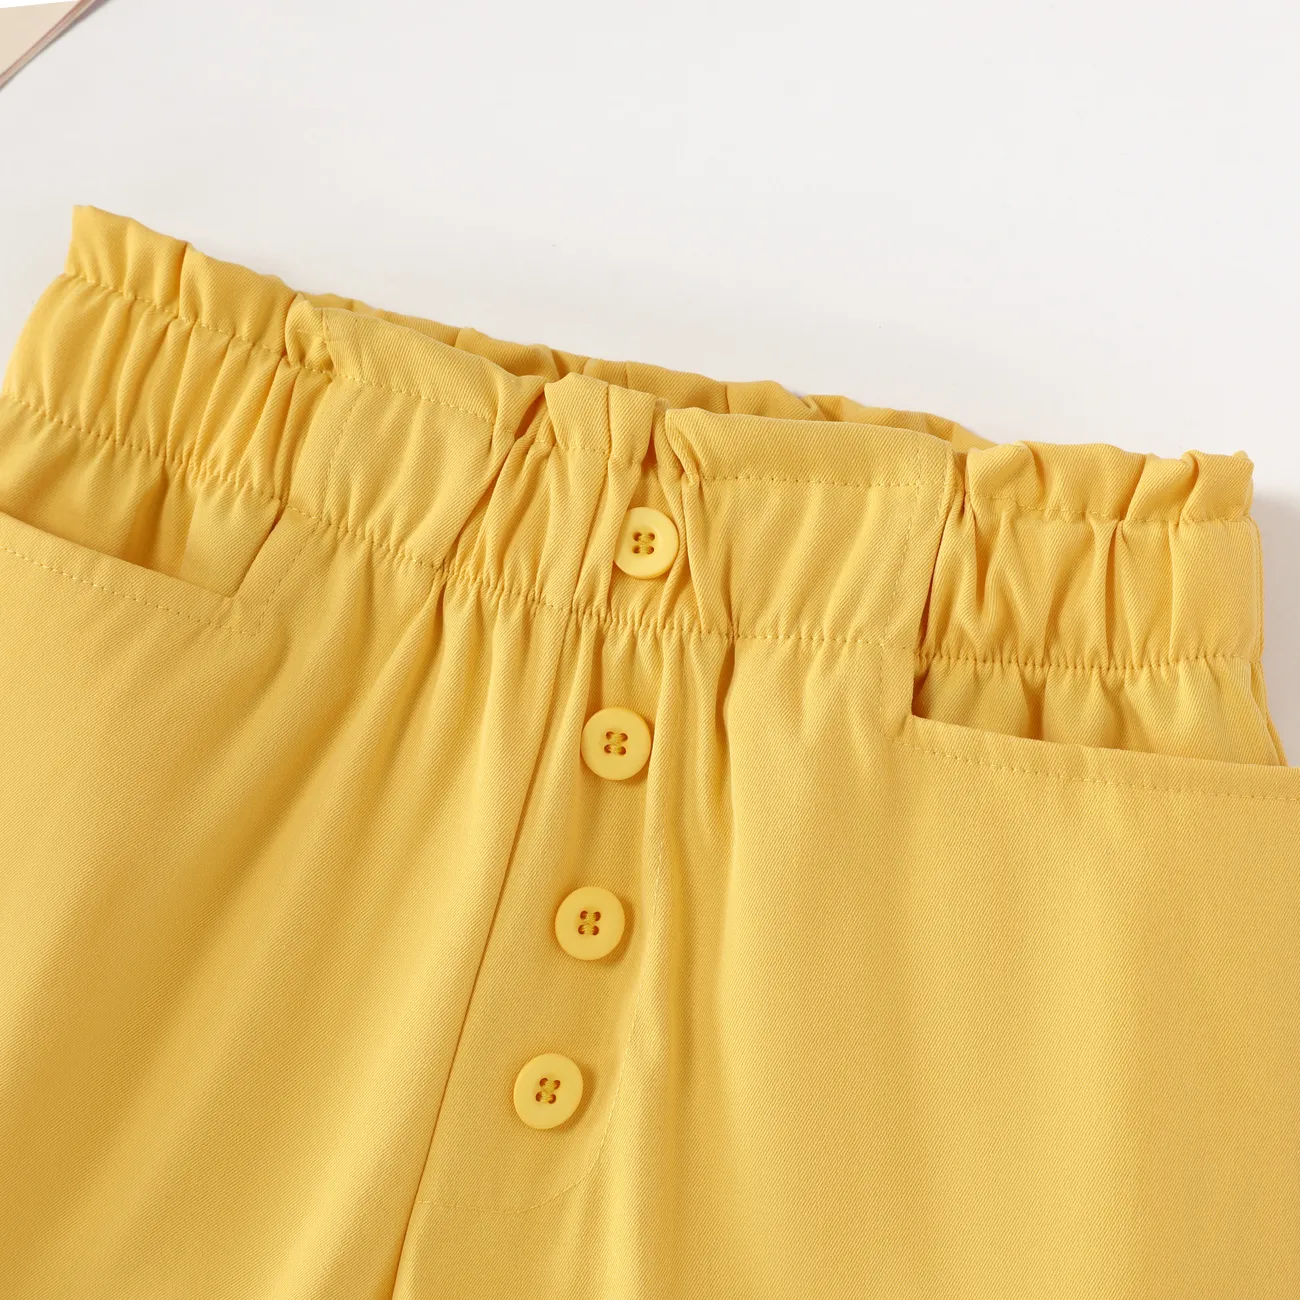 Niedliche Spitzenshorts mit hoher Taille für Mädchen, Polyesterstoff, 1-teiliges Set, lässiger Stil, einfarbig gelb big image 1